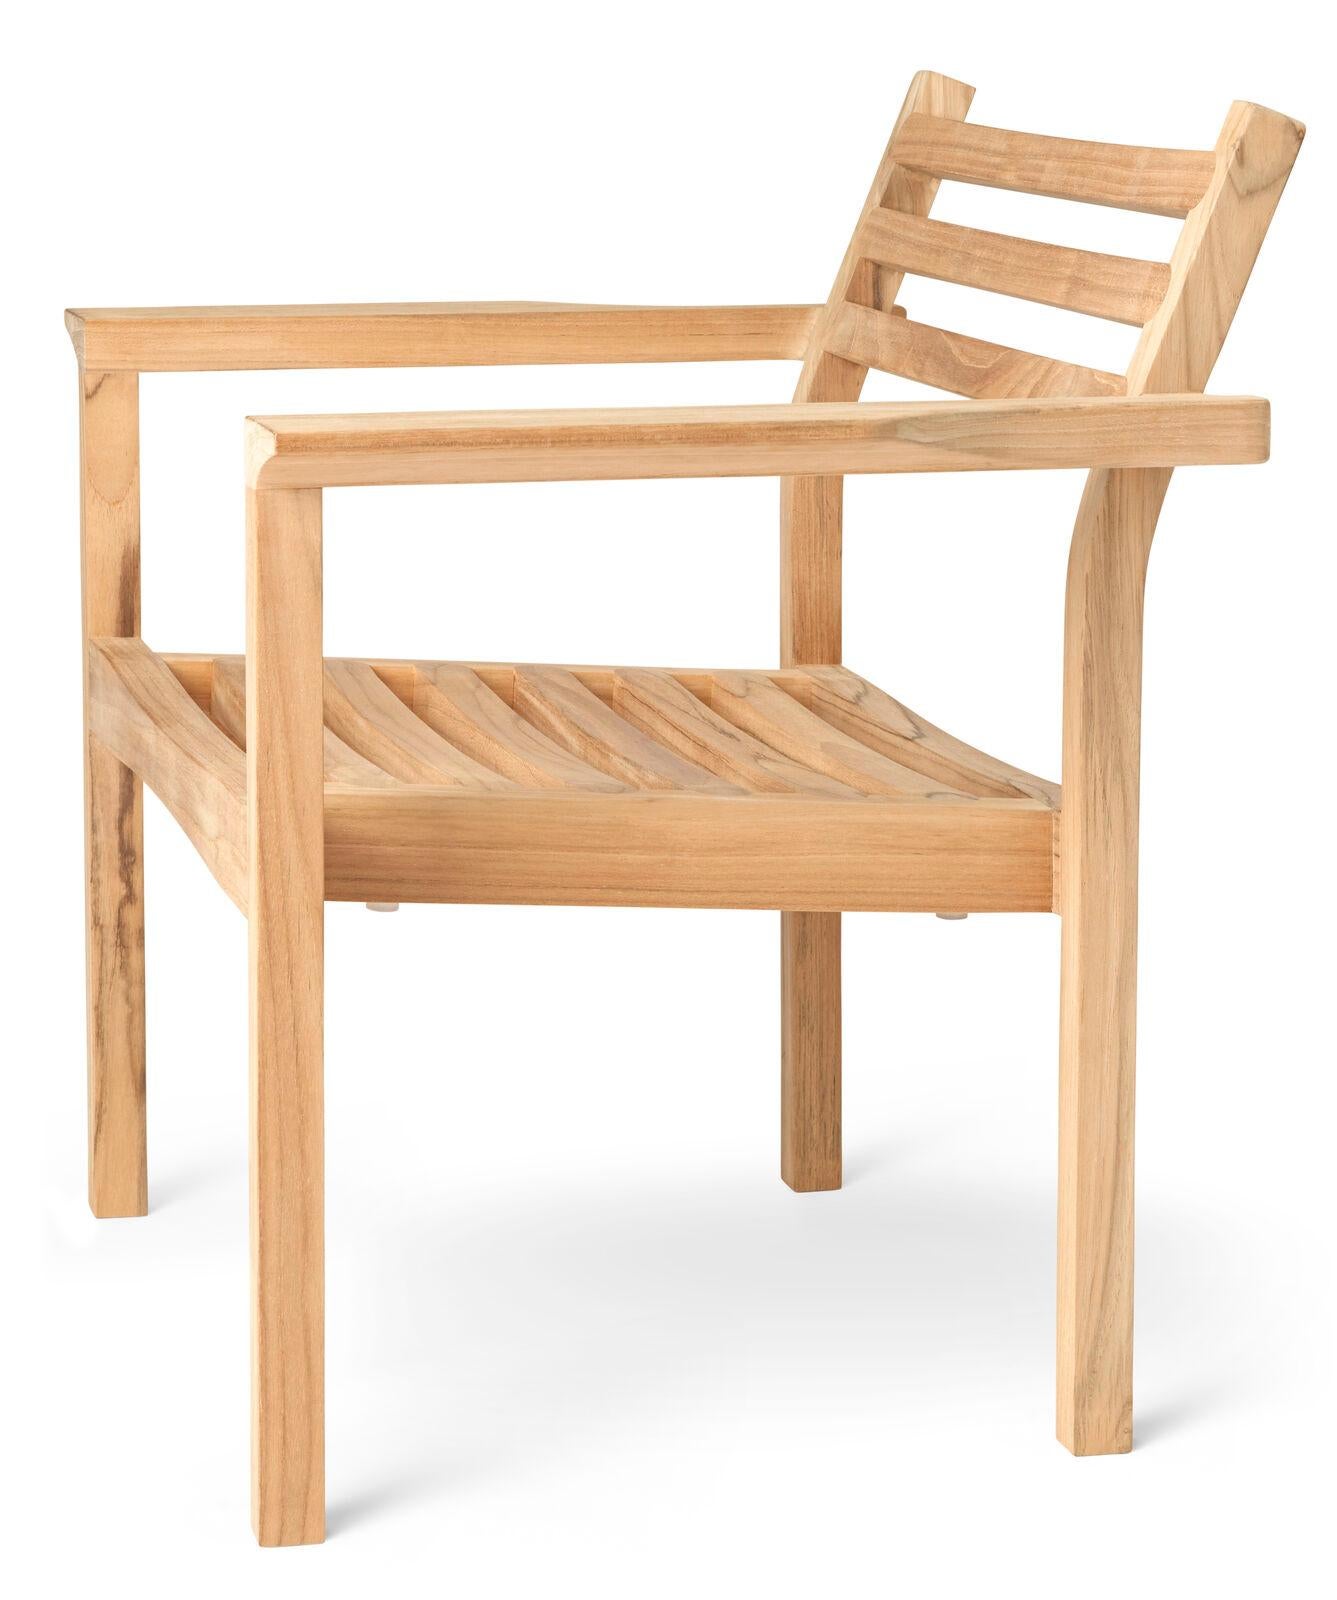 La chaise AH601 Outdoor Lounge a été conçue par Alfred Homann en 2022 dans le cadre de la série AH Outdoor. Comme le reste du mobilier d'extérieur de la série, la chaise longue se caractérise par des lignes strictes élégamment combinées à des